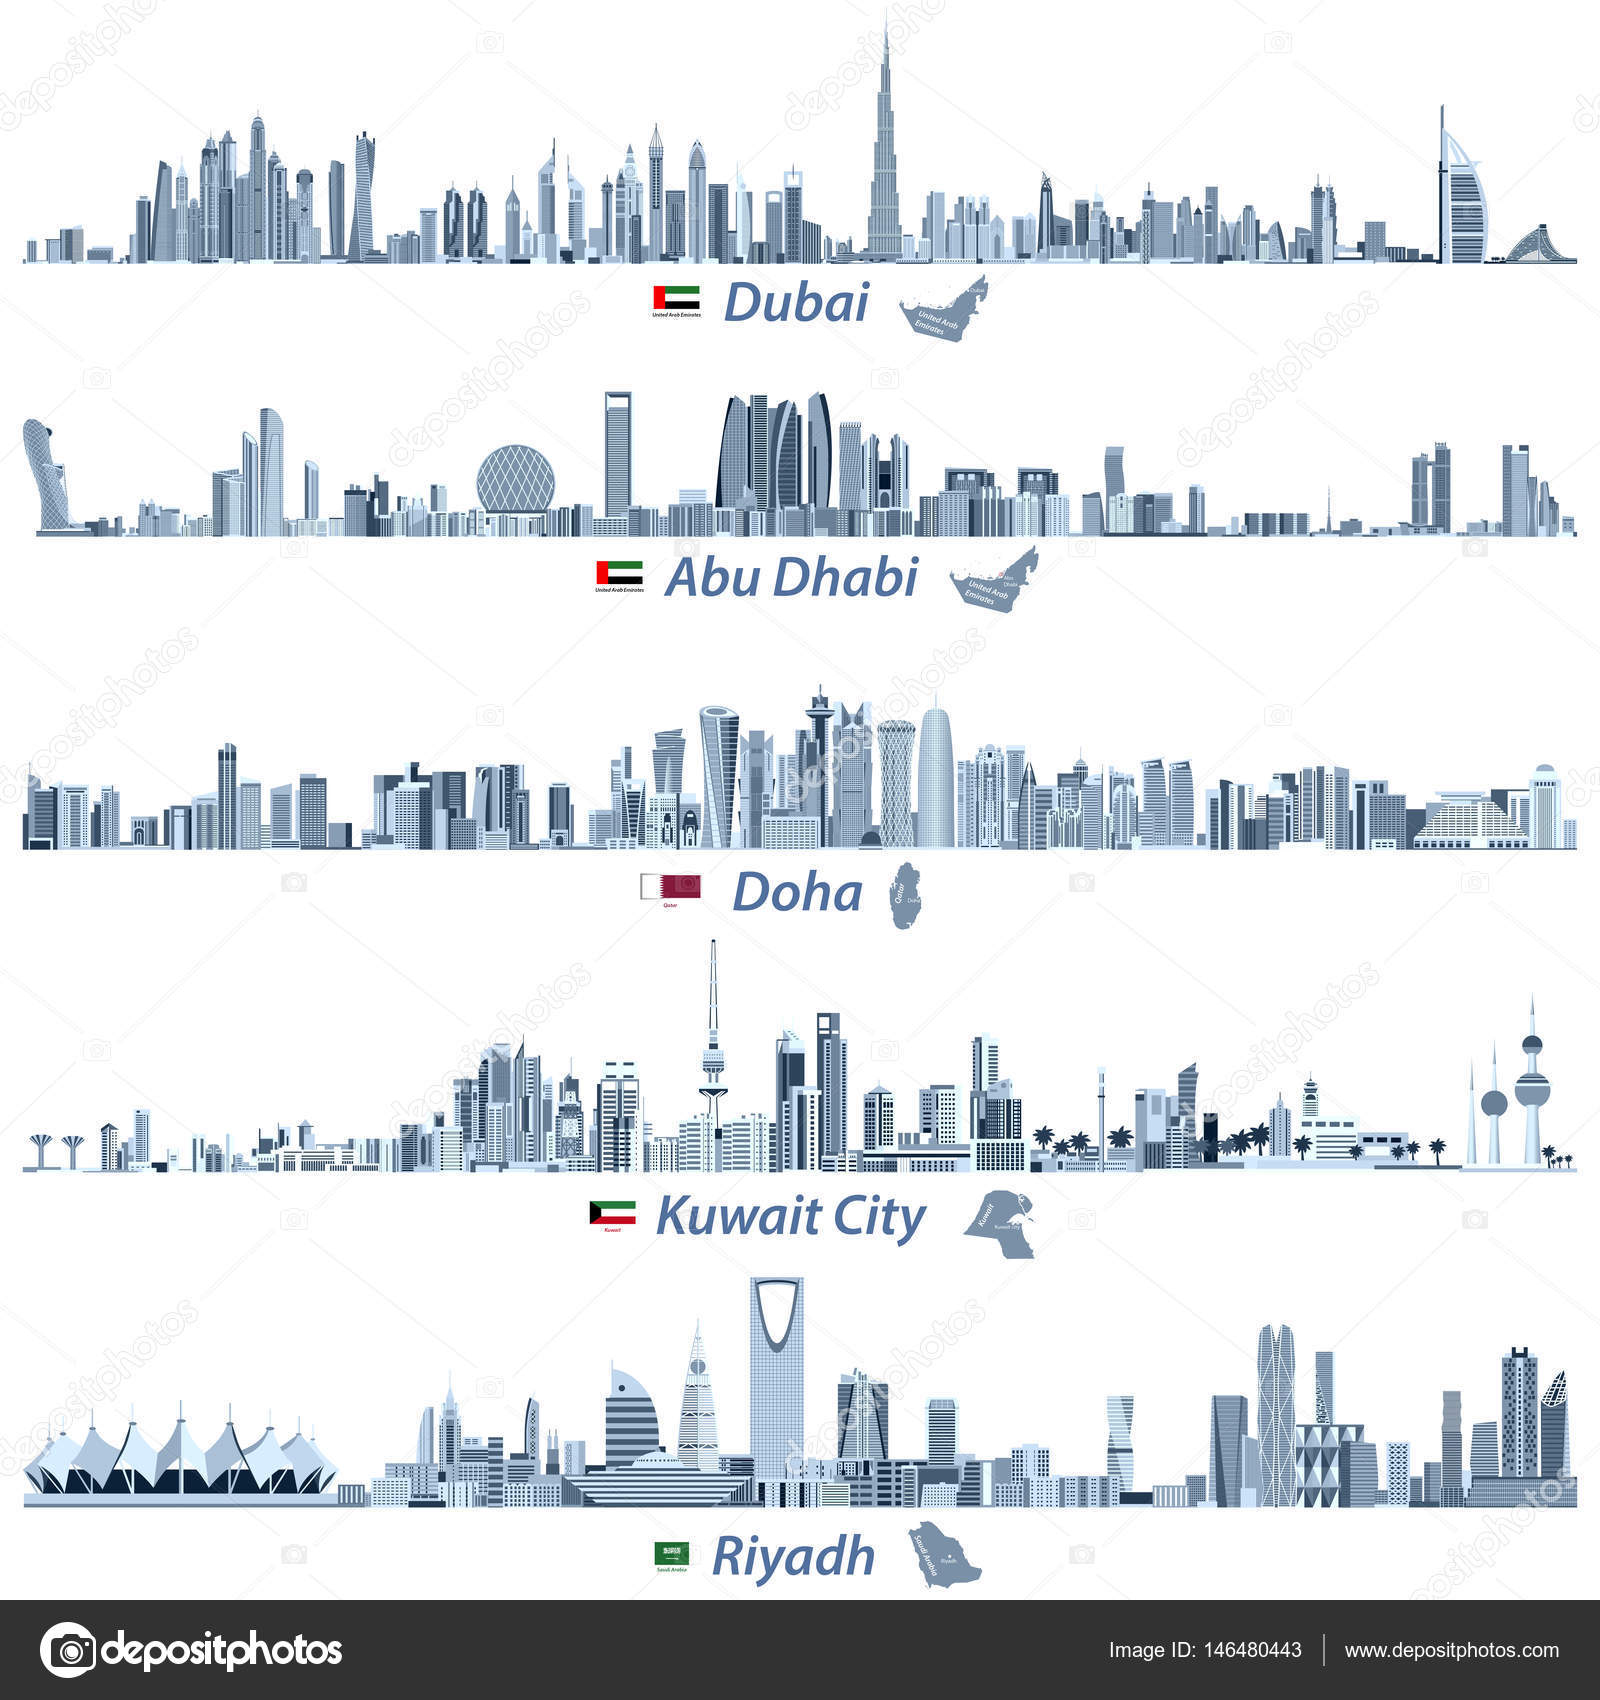 Abstract vector illustrations of Dubai, Abu Dhabi, Doha, Riyadh and